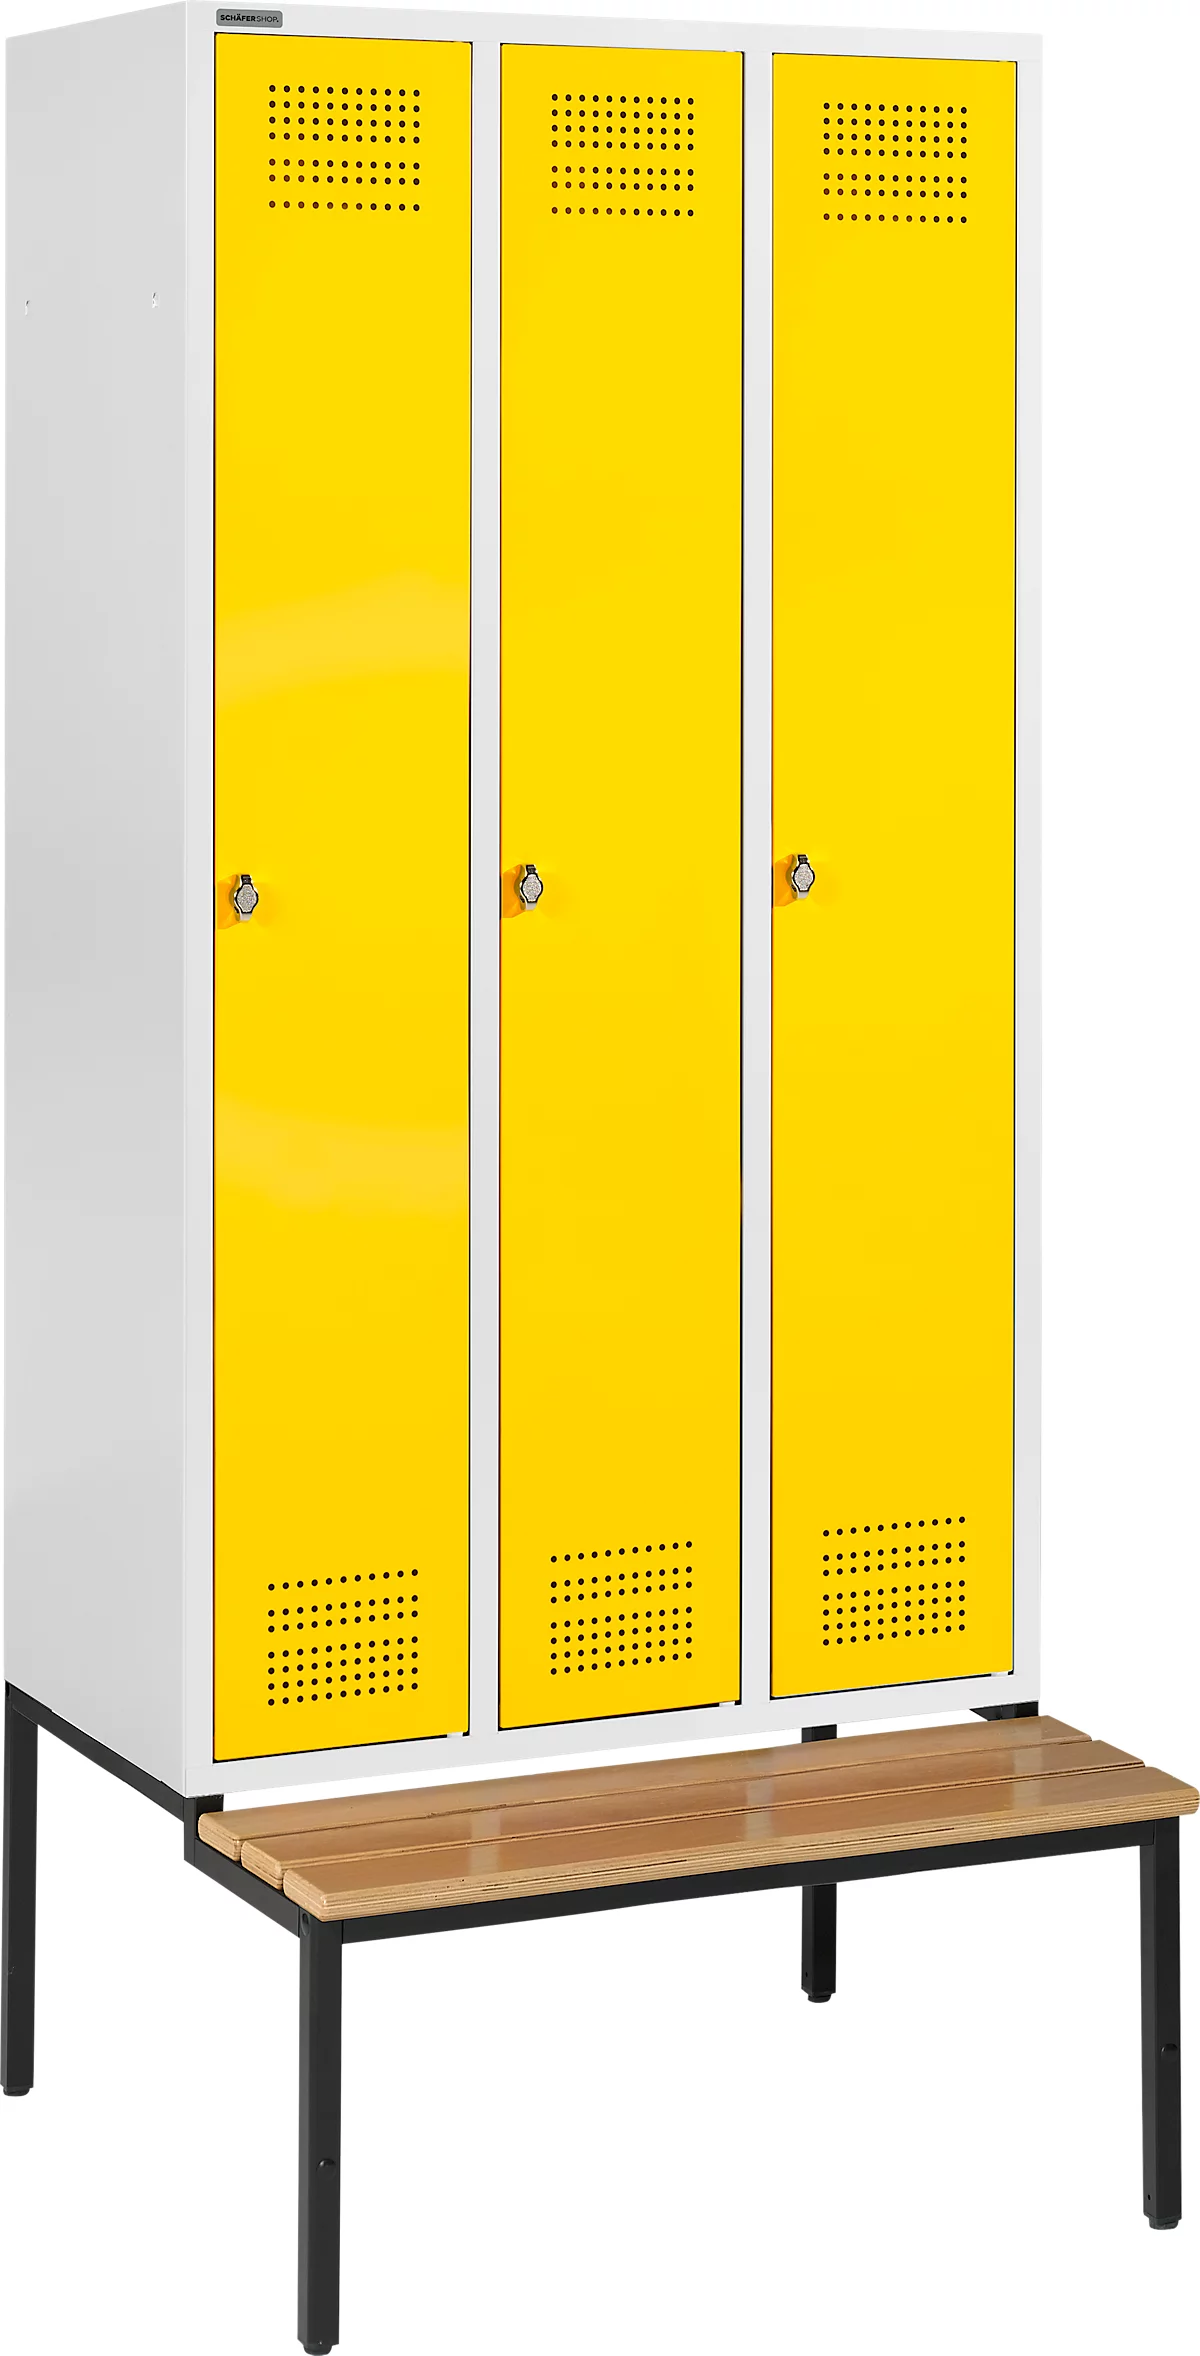 Schäfer Shop Genius Taquilla con banco, 3 compartimentos, cierre giratorio, gris luminoso/amarillo